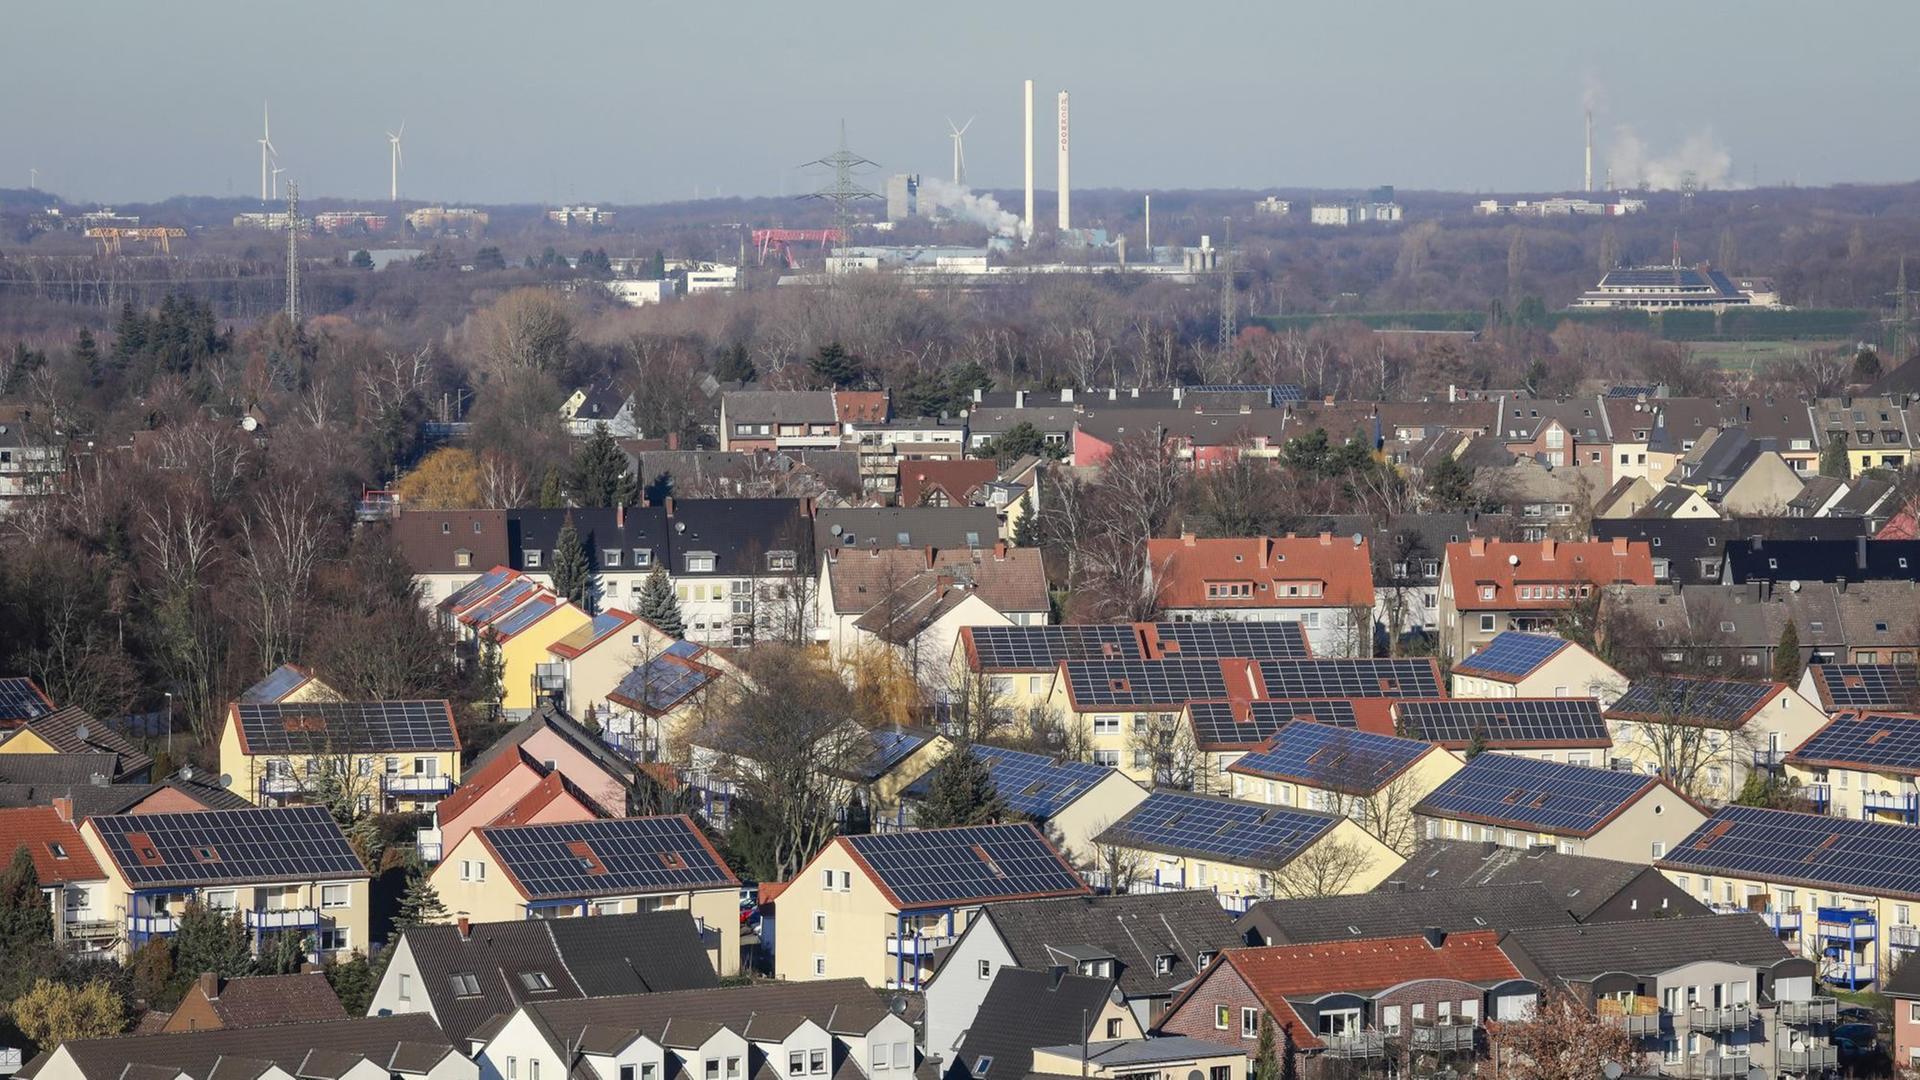 Blick auf Bottrop, im Vordergrund Häuser mit Solarpanels auf dem Dach